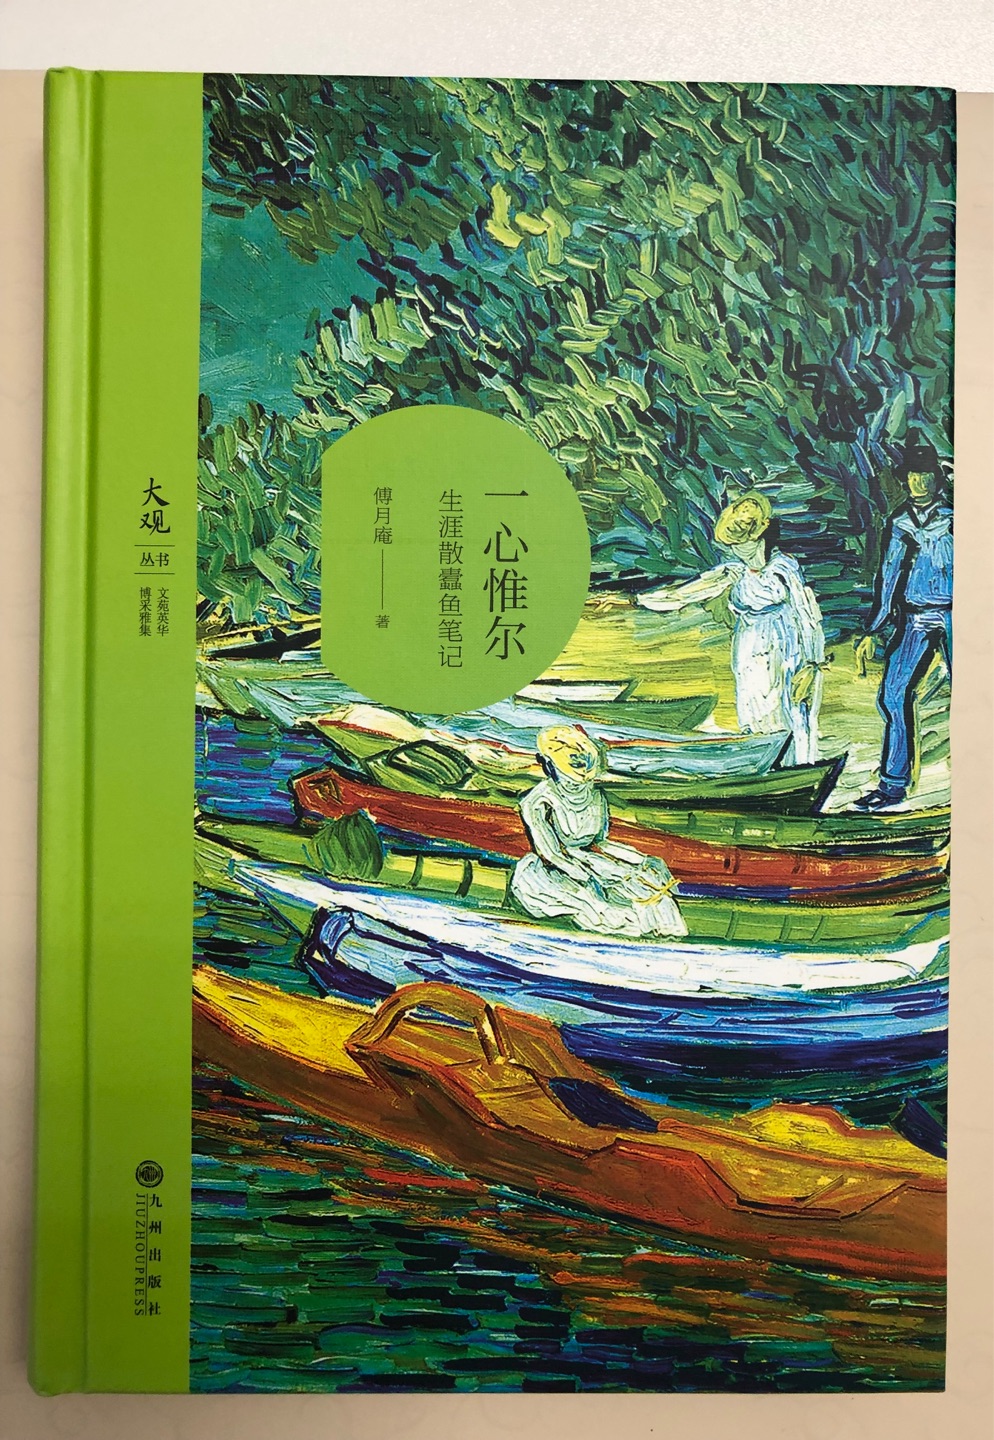 李辉主编的副刊文丛，买了第一二两辑。内容不错，图片印刷再清楚点就更好了。